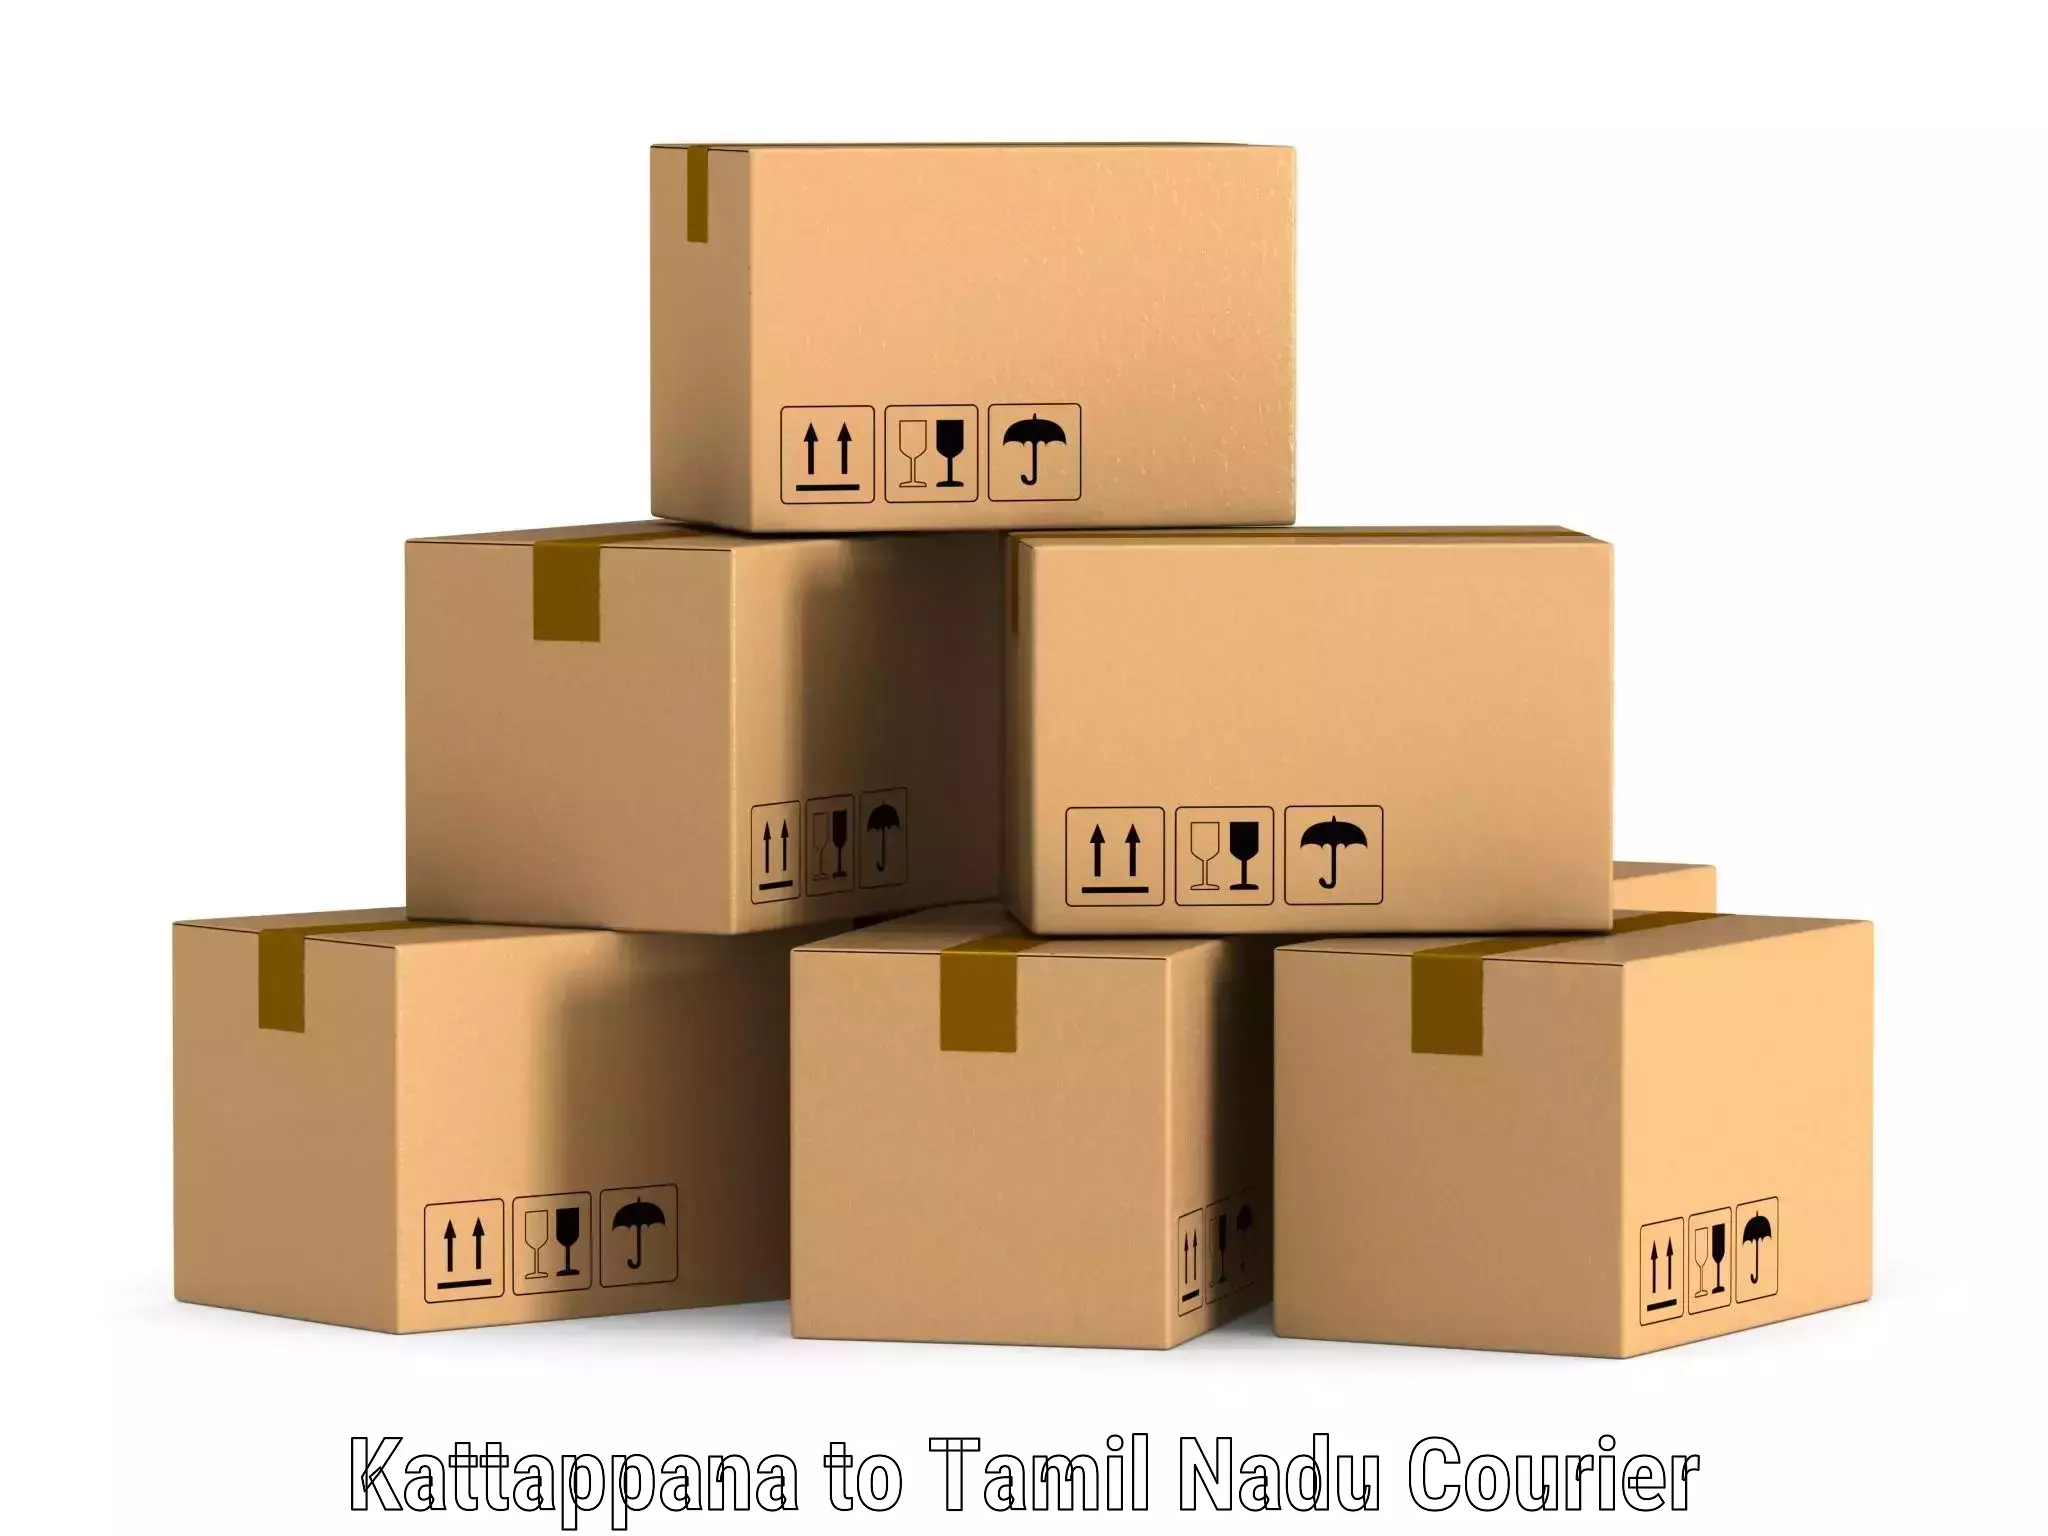 Comprehensive shipping network Kattappana to Karaikudi